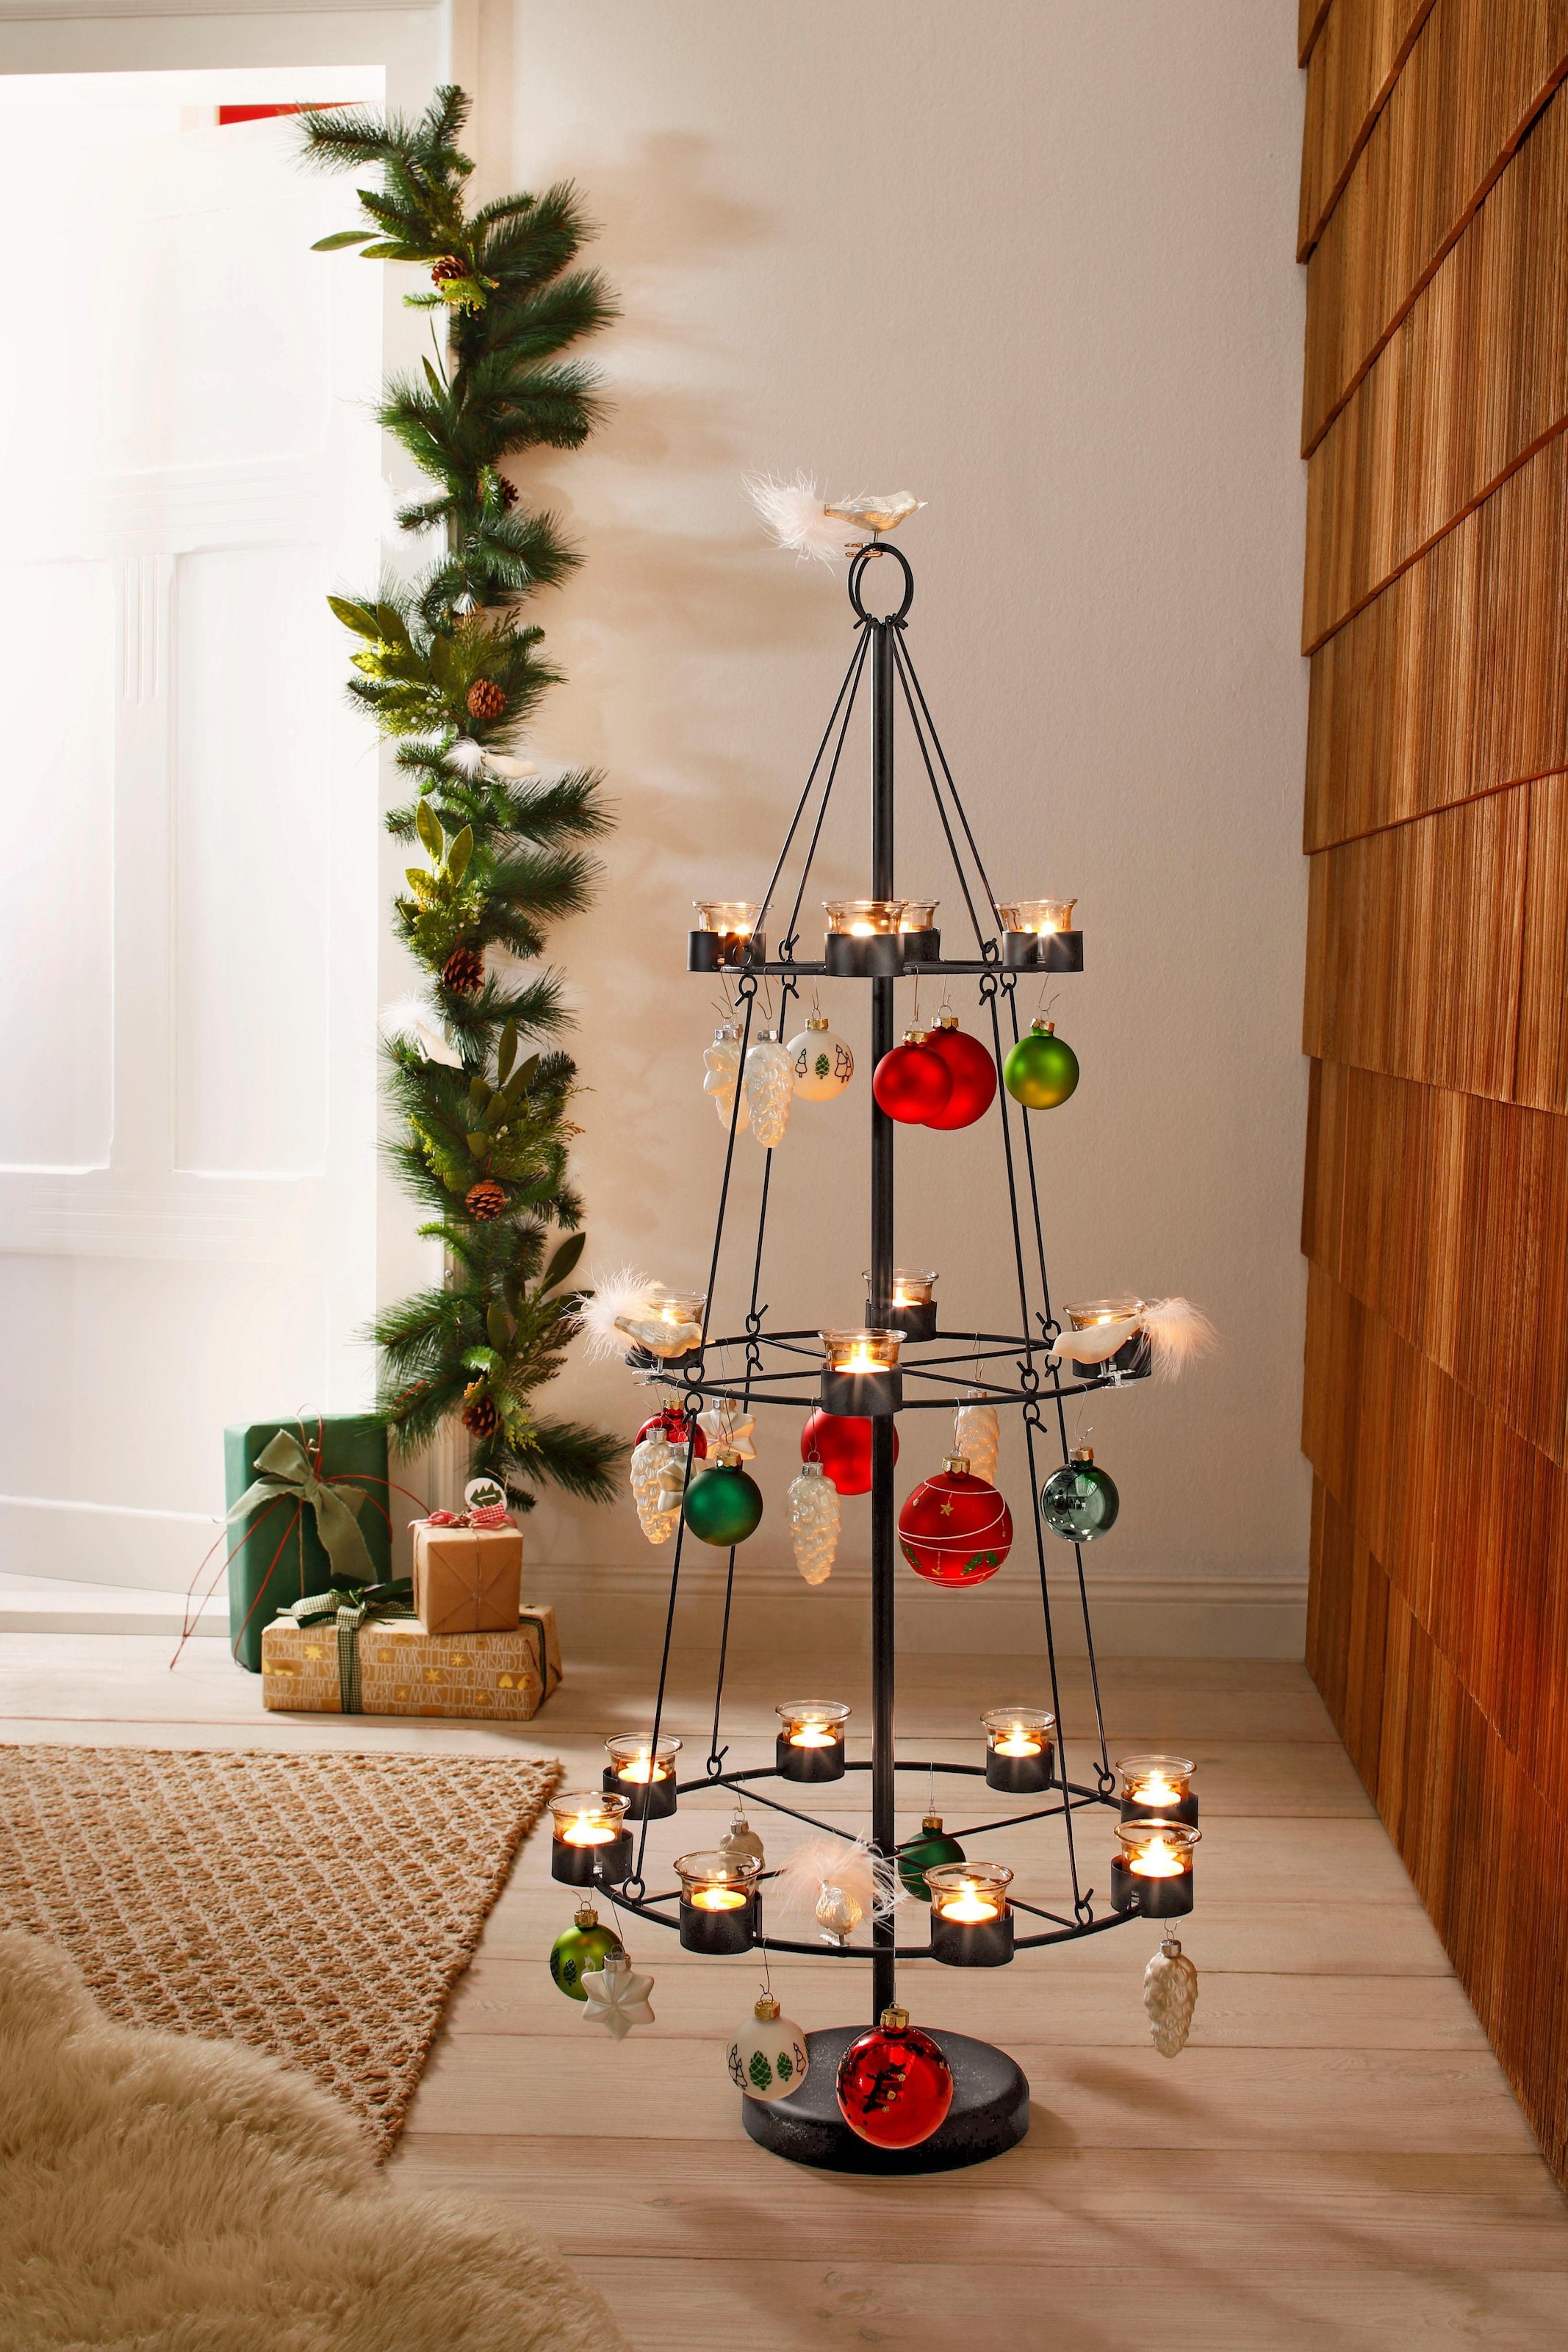 Home affaire Teelichthalter »Christbaum, Weihnachtsdeko«, Höhe 120 cm